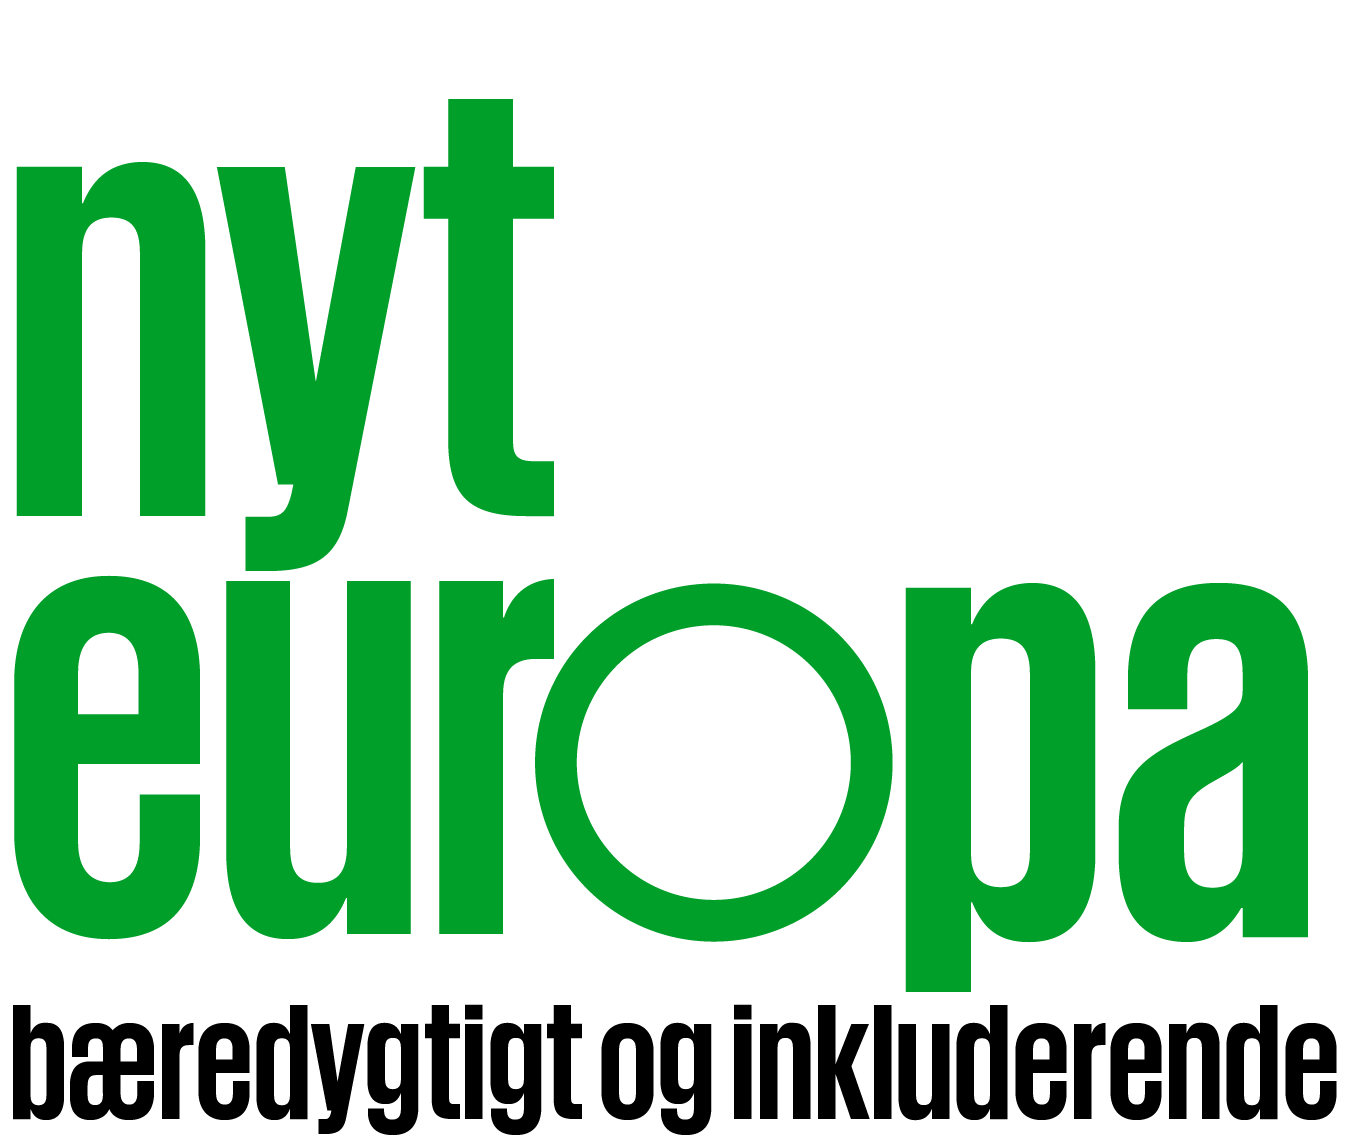 Nyt Europa logo